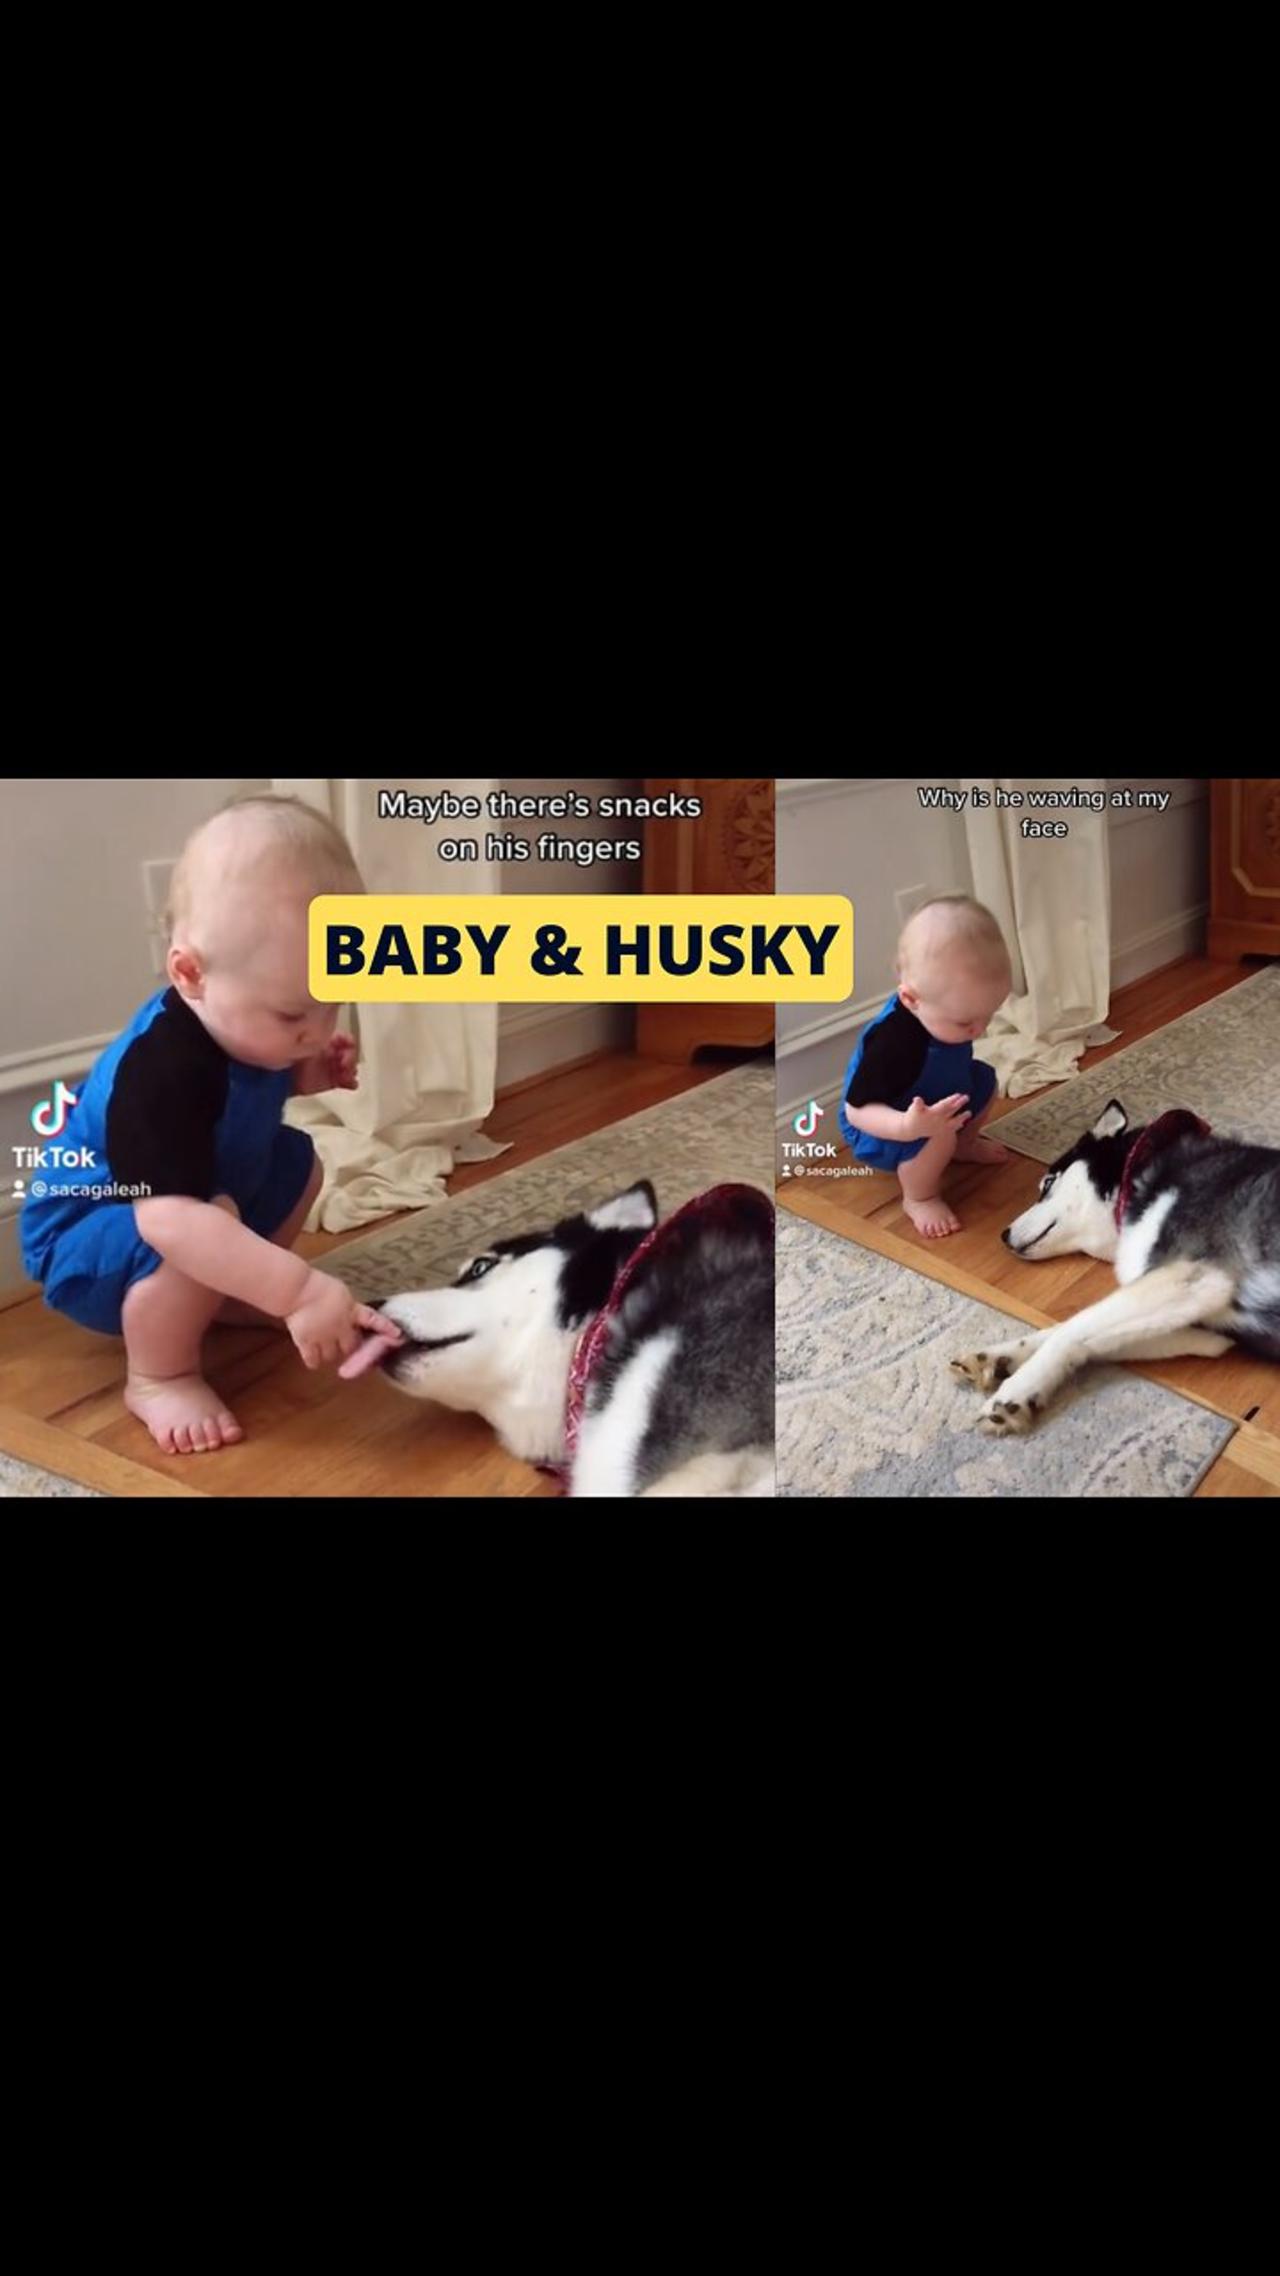 Baby and Husky Playing